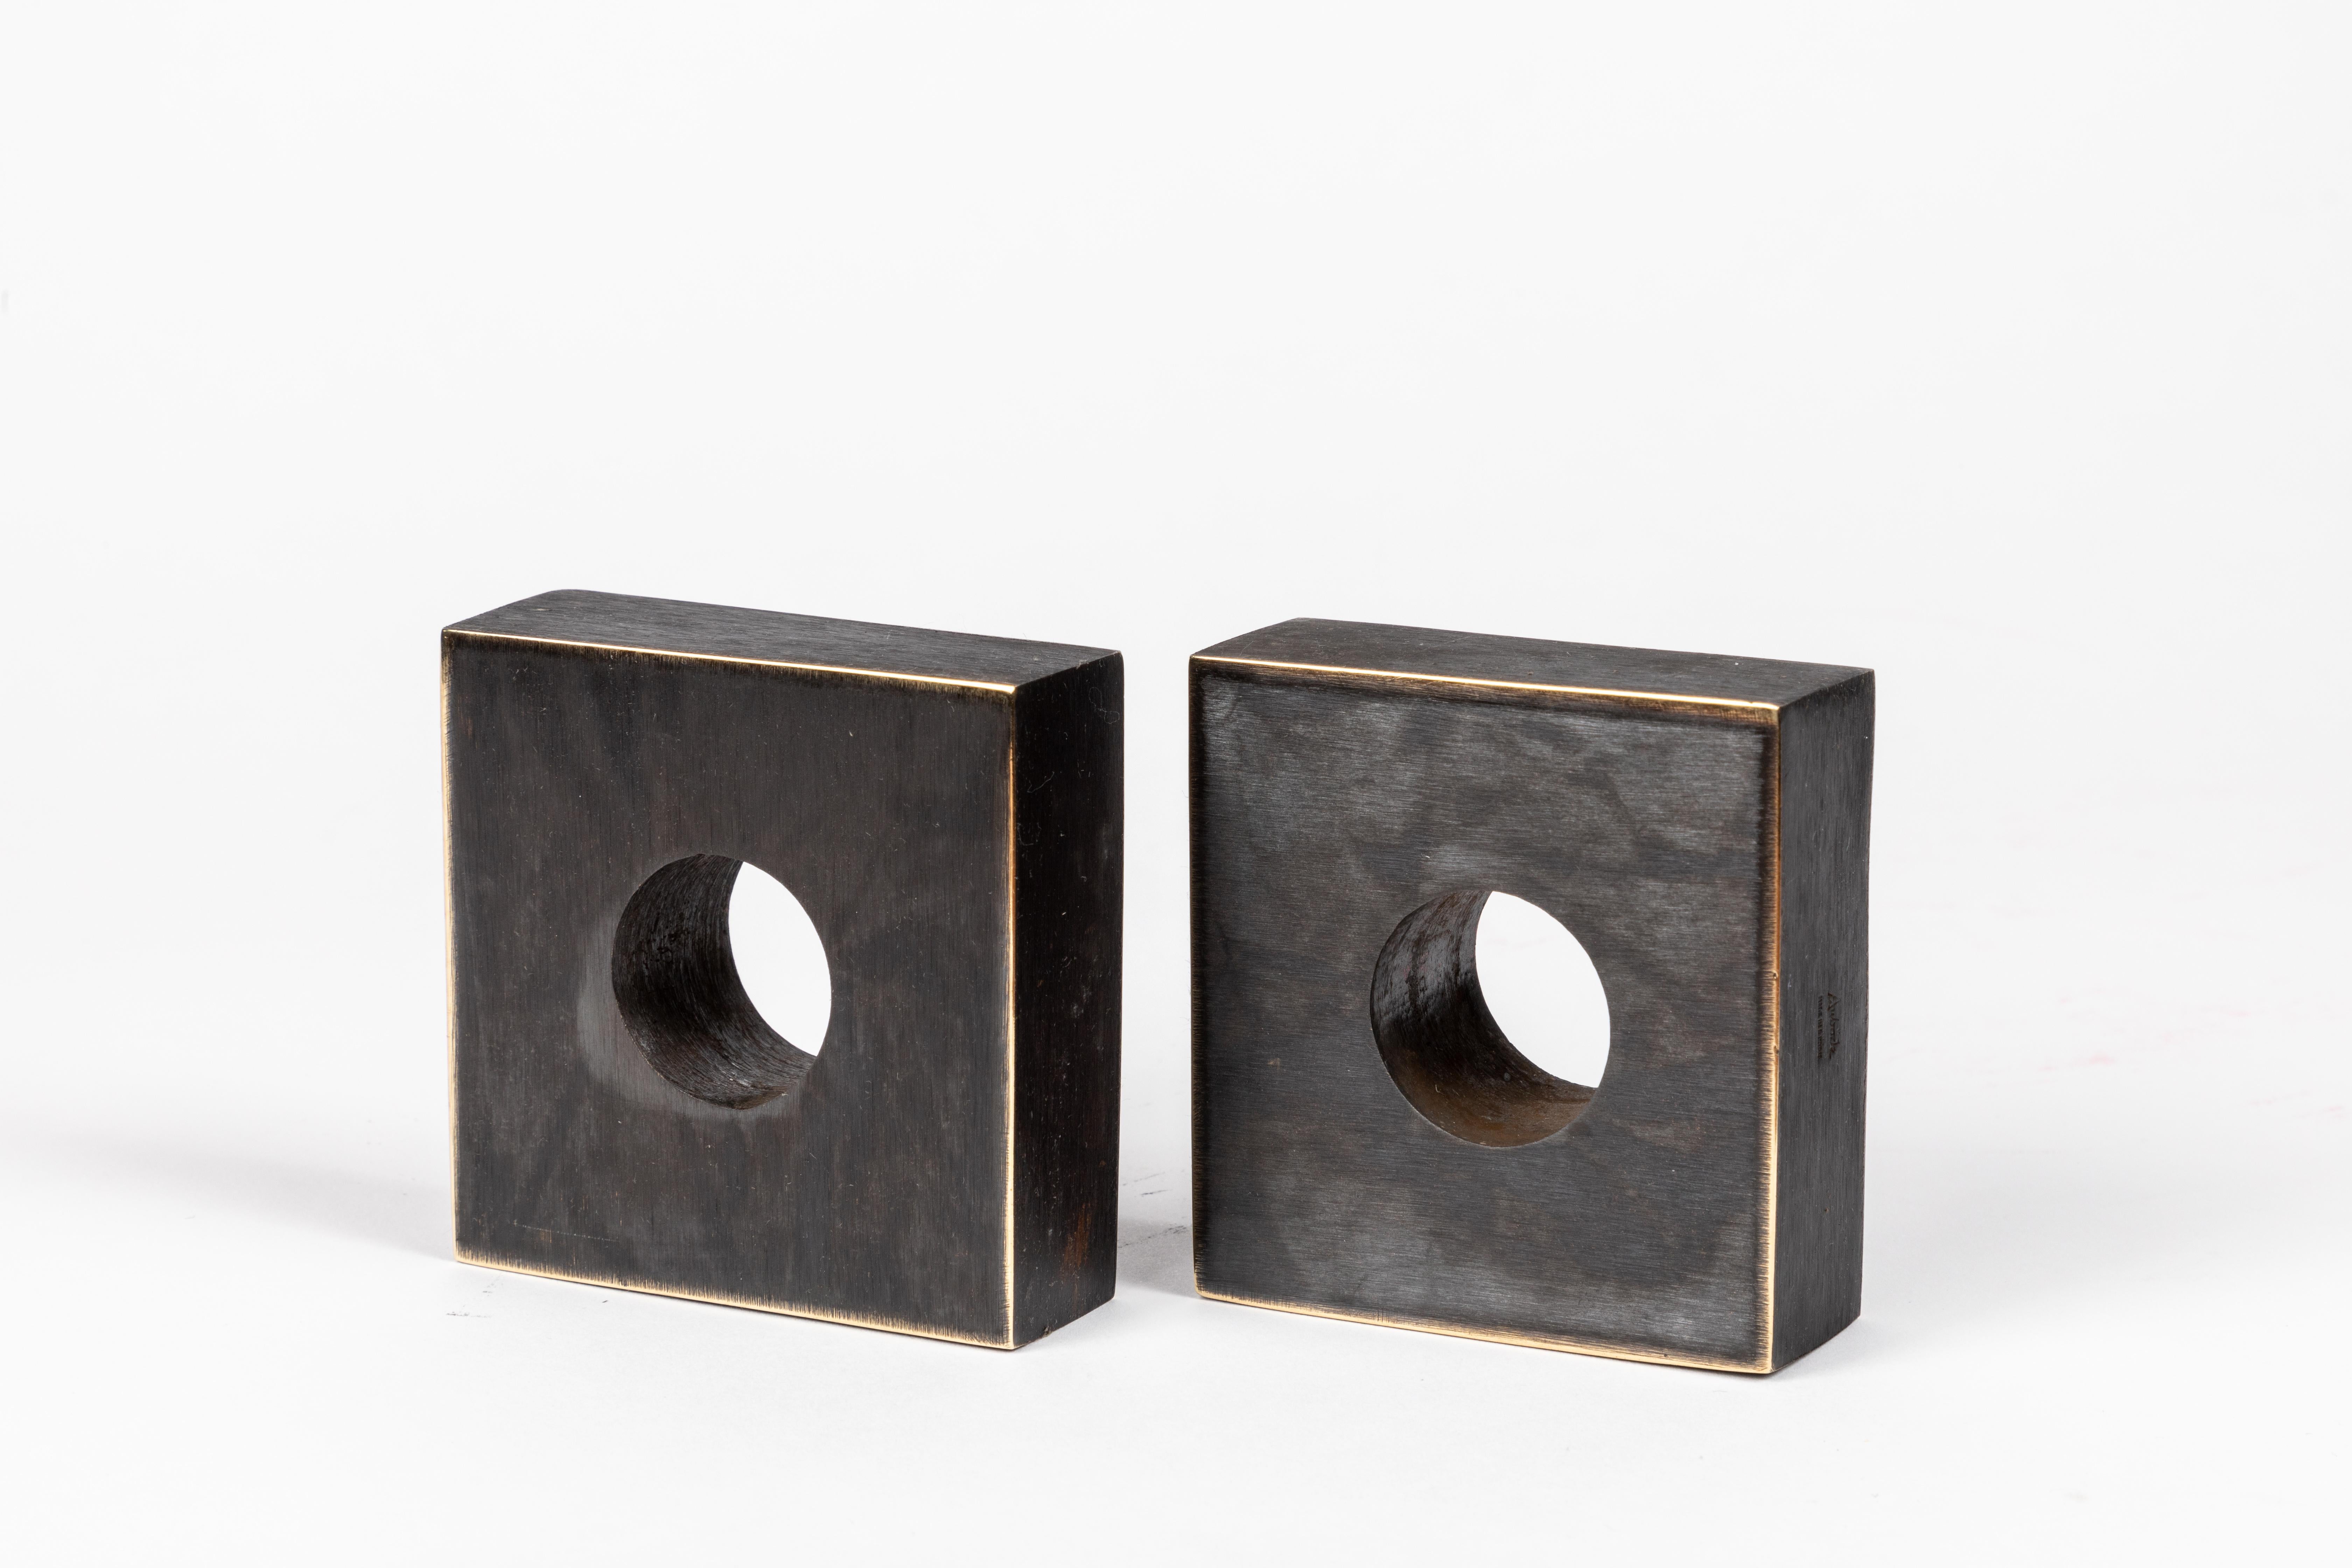 Paar Carl Aubo¨ck Modell #4575 Buchstützen aus patiniertem Messing. Dieses unglaublich raffinierte und skulpturale Paar Buchstützen wurde in den 1950er Jahren entworfen und ist aus patiniertem Messing gefertigt. 

Hergestellt von Carl Auböck IV. in